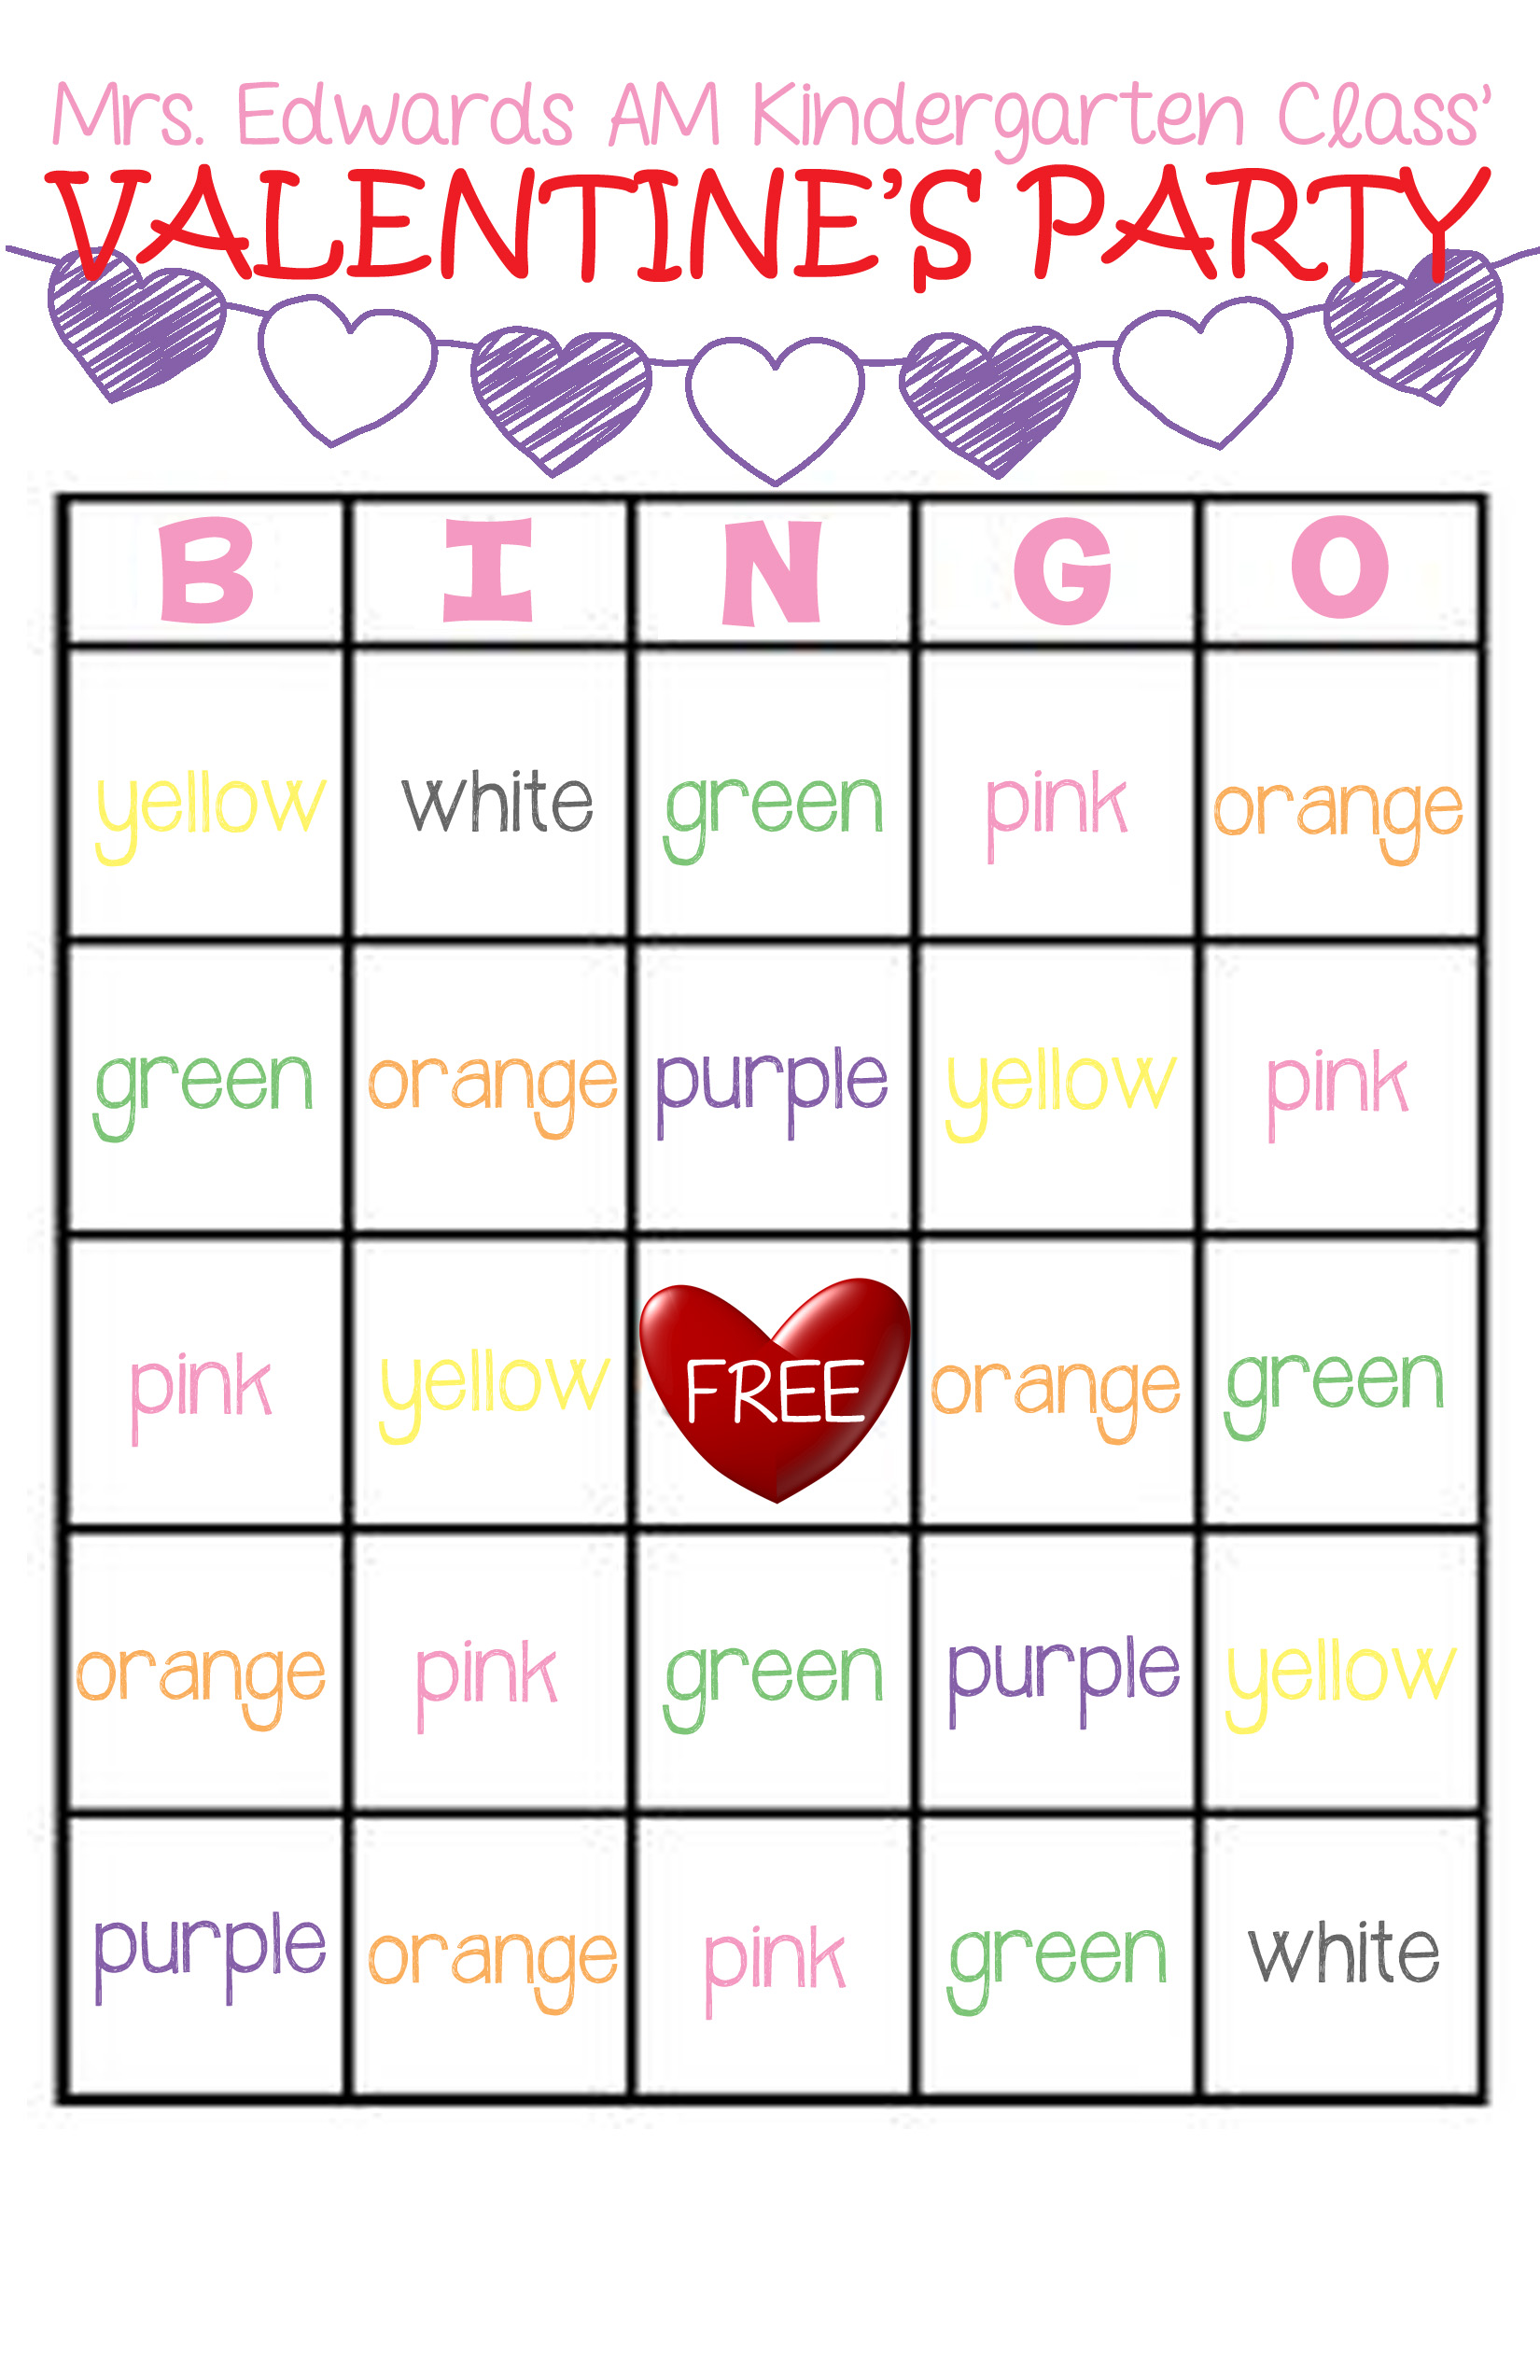 Classroom Valentine's Party Bingo Game - FREE Printable1650 x 2550